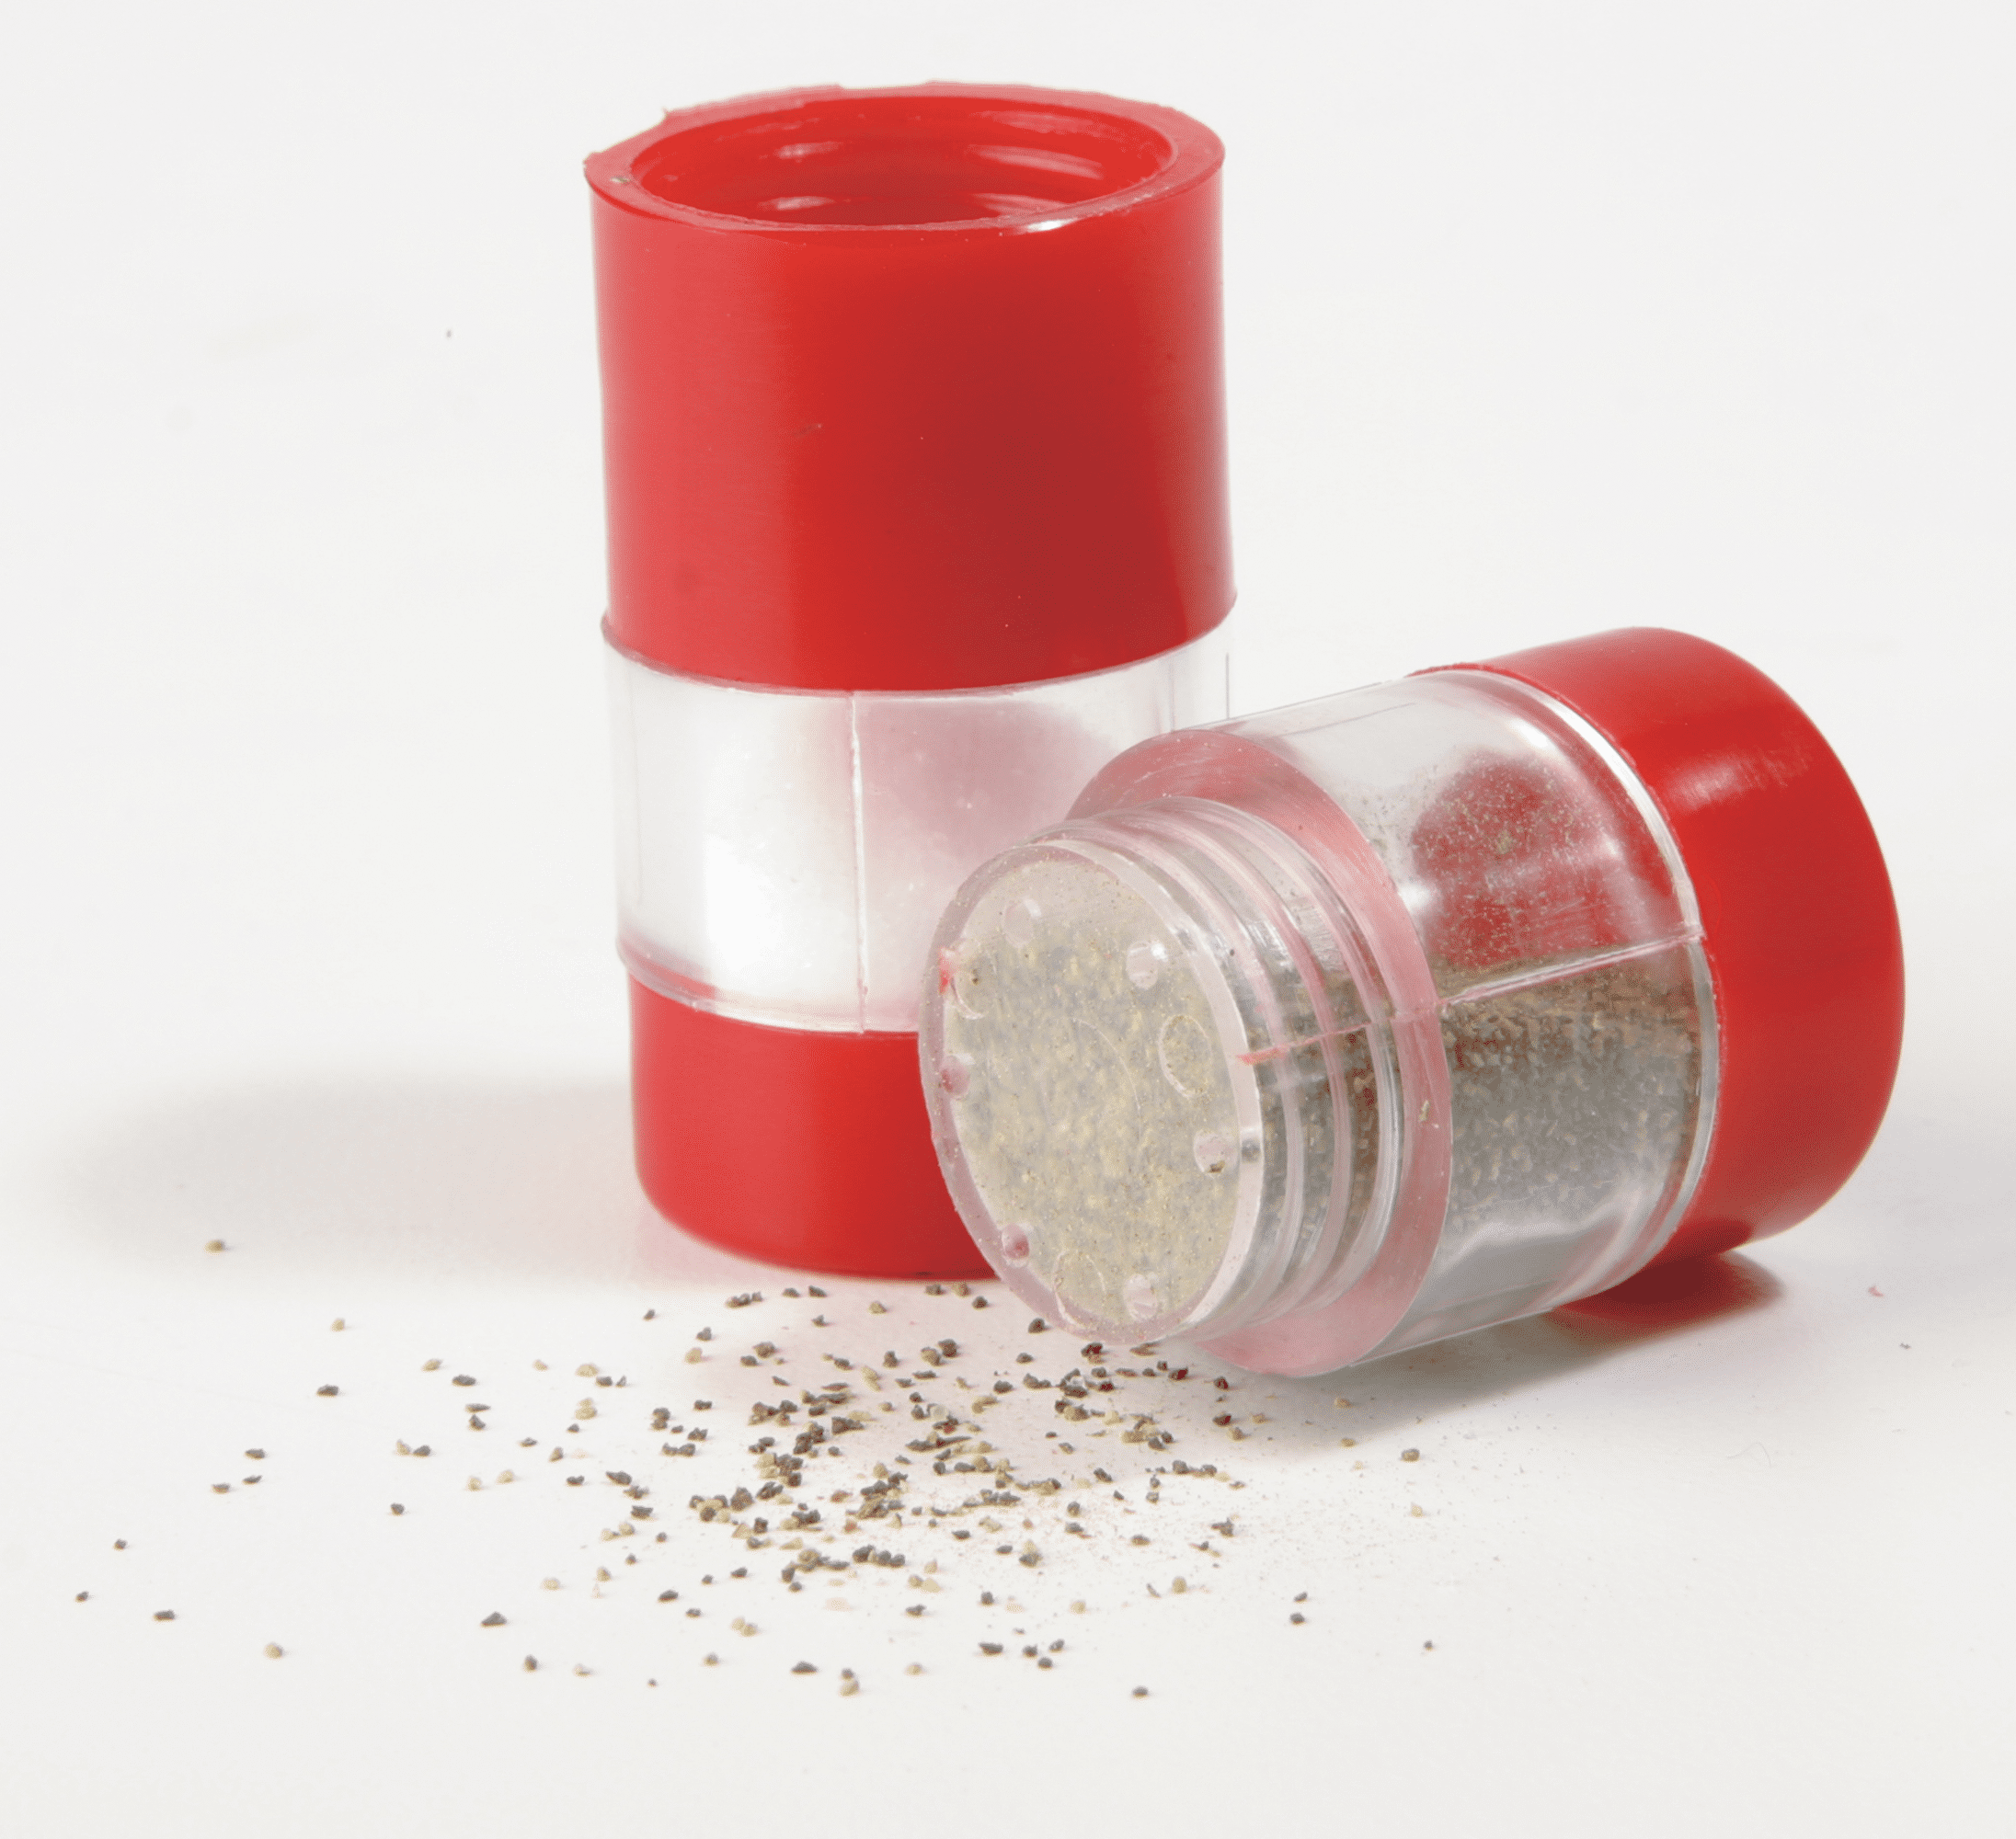 COGHLAN'S Backpacker's Salt & Pepper Shaker 8236 Spill/Moisture Proof Set of 2 